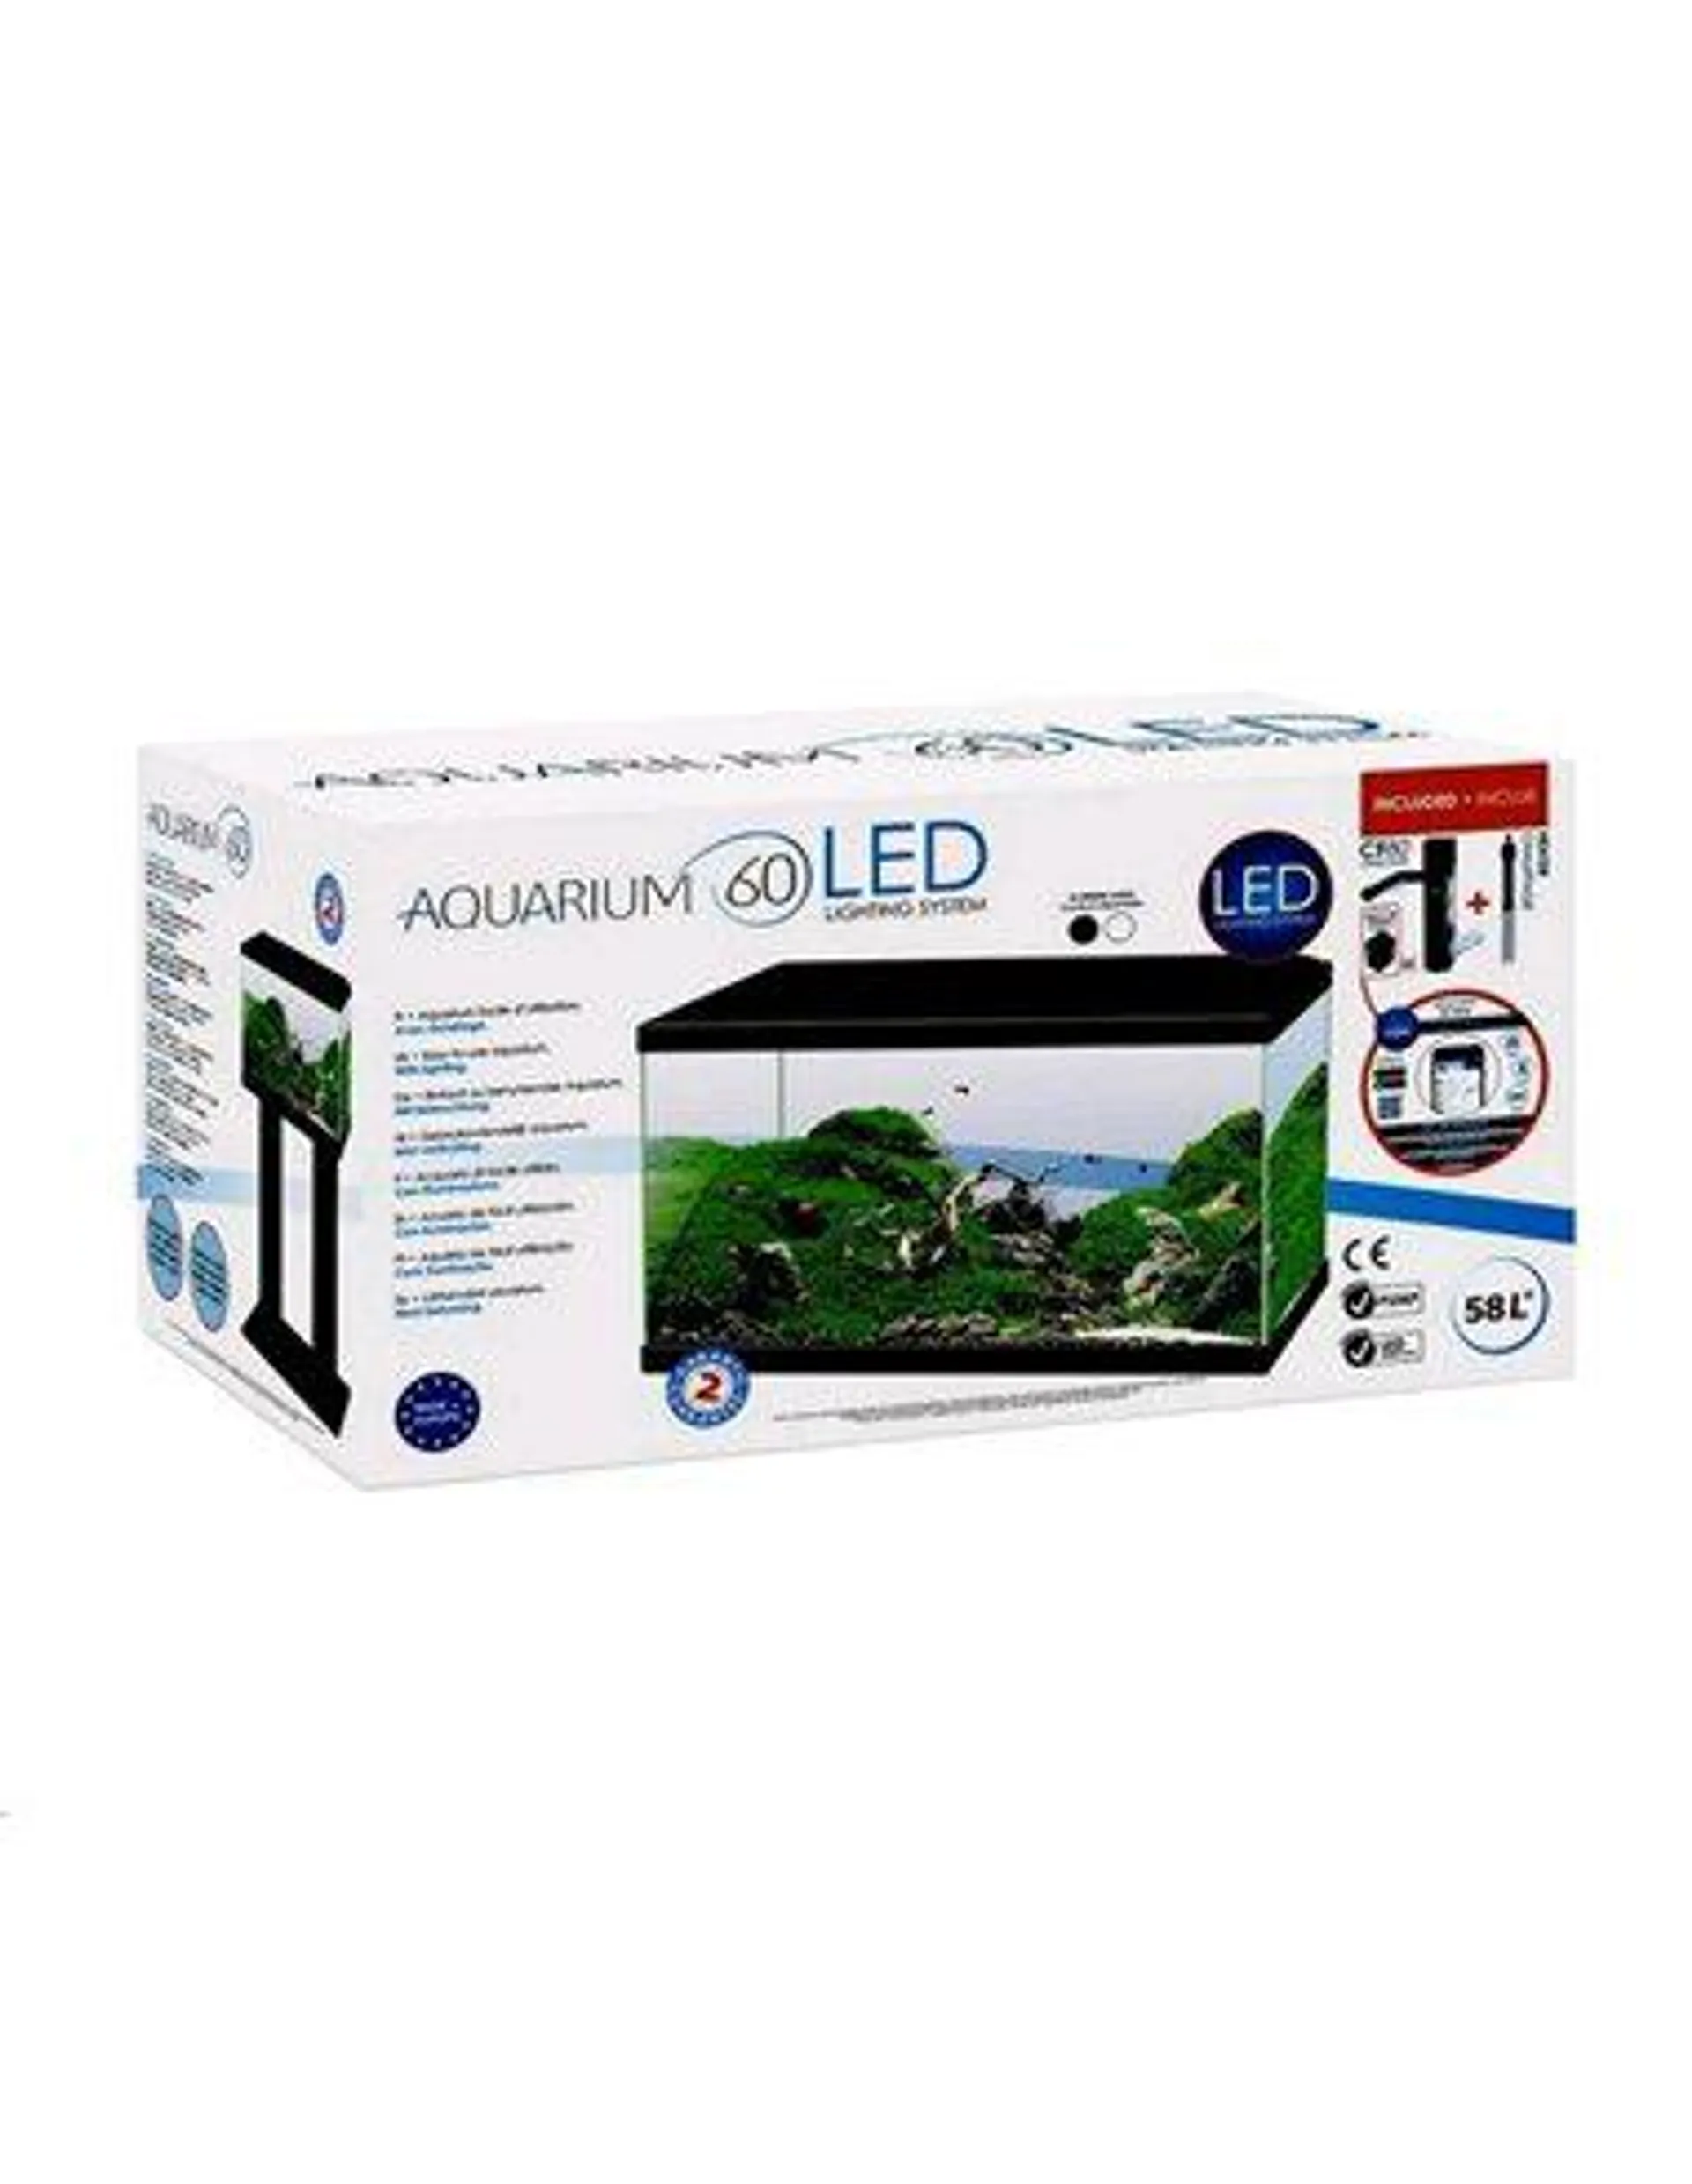 ACUARIO AQUARIUM 60 LED filtro interior 60X30X33,5CM 58L.